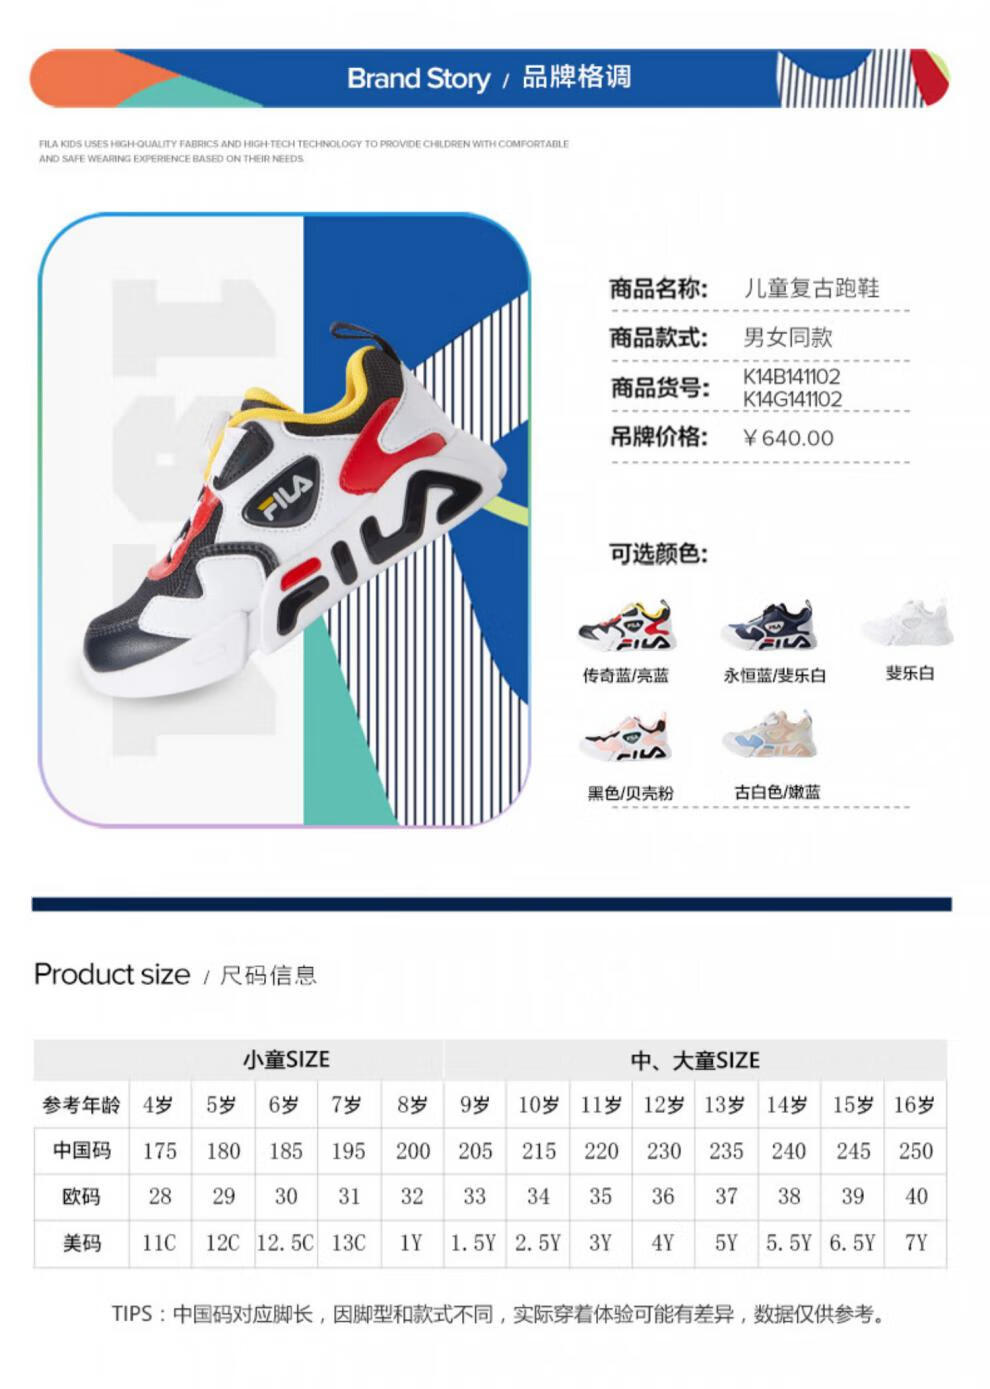 斐乐鞋韩国尺码对照表图片